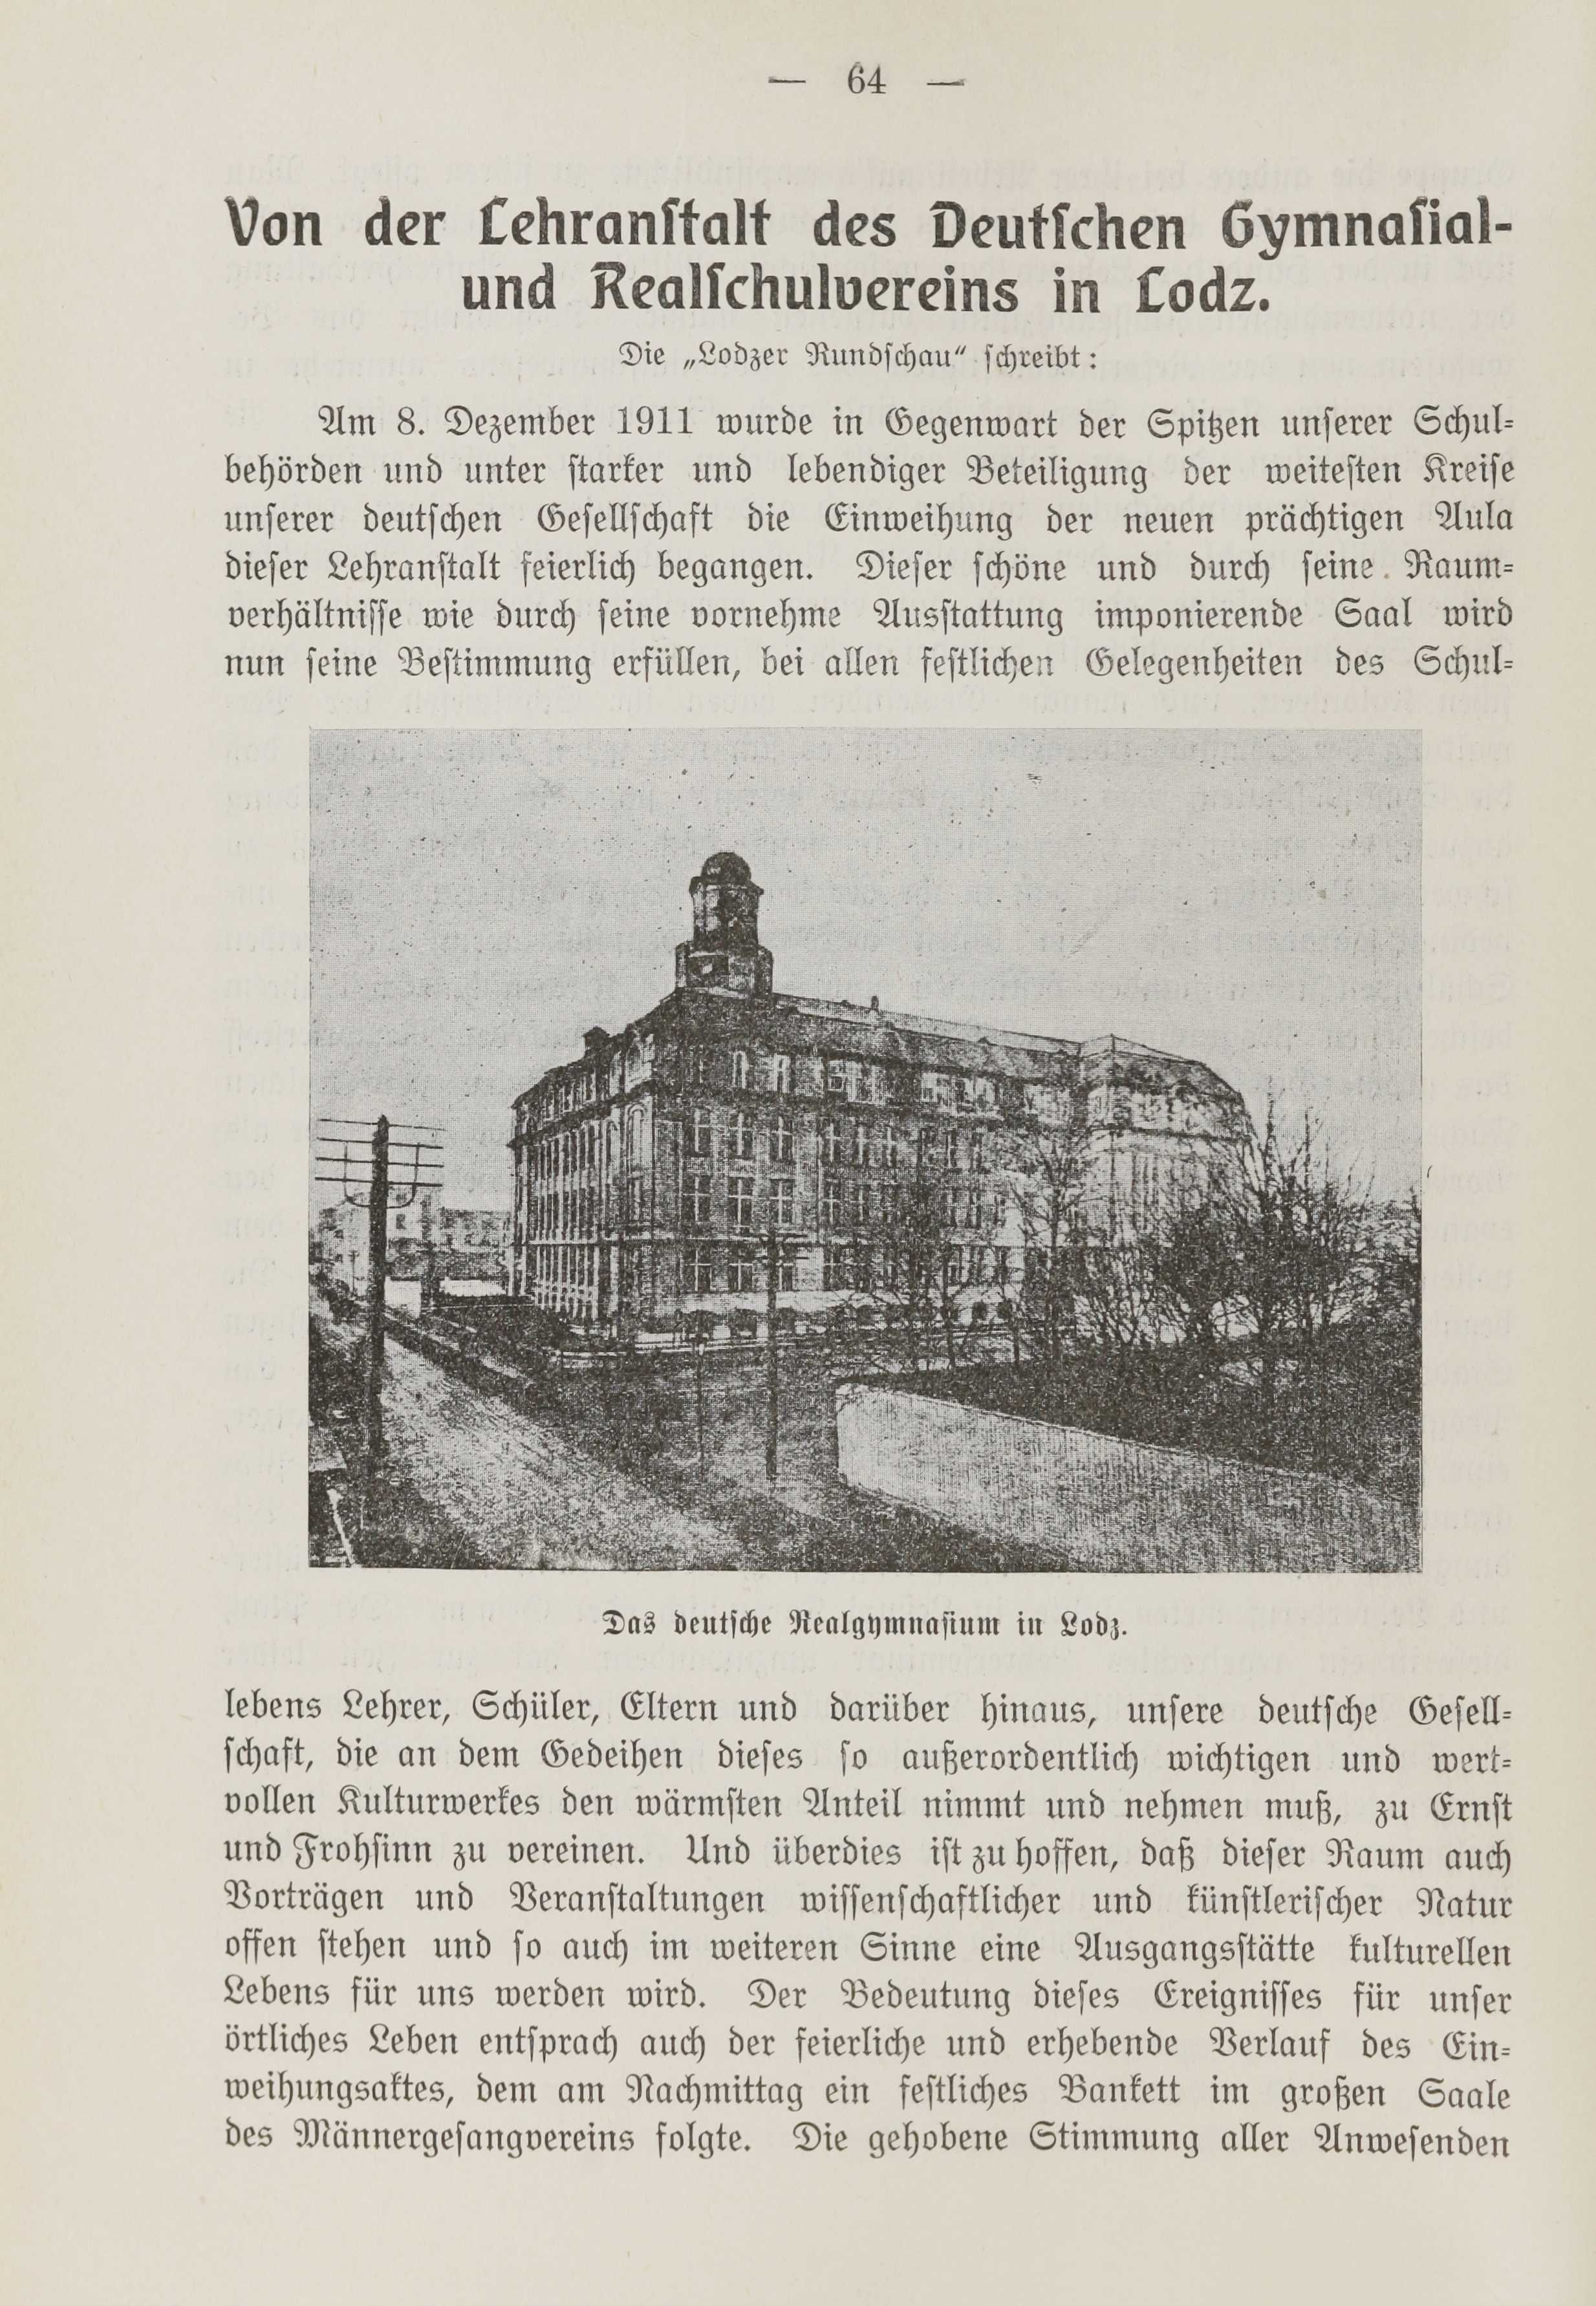 Deutsche Monatsschrift für Russland [1] (1912) | 71. (64) Põhitekst